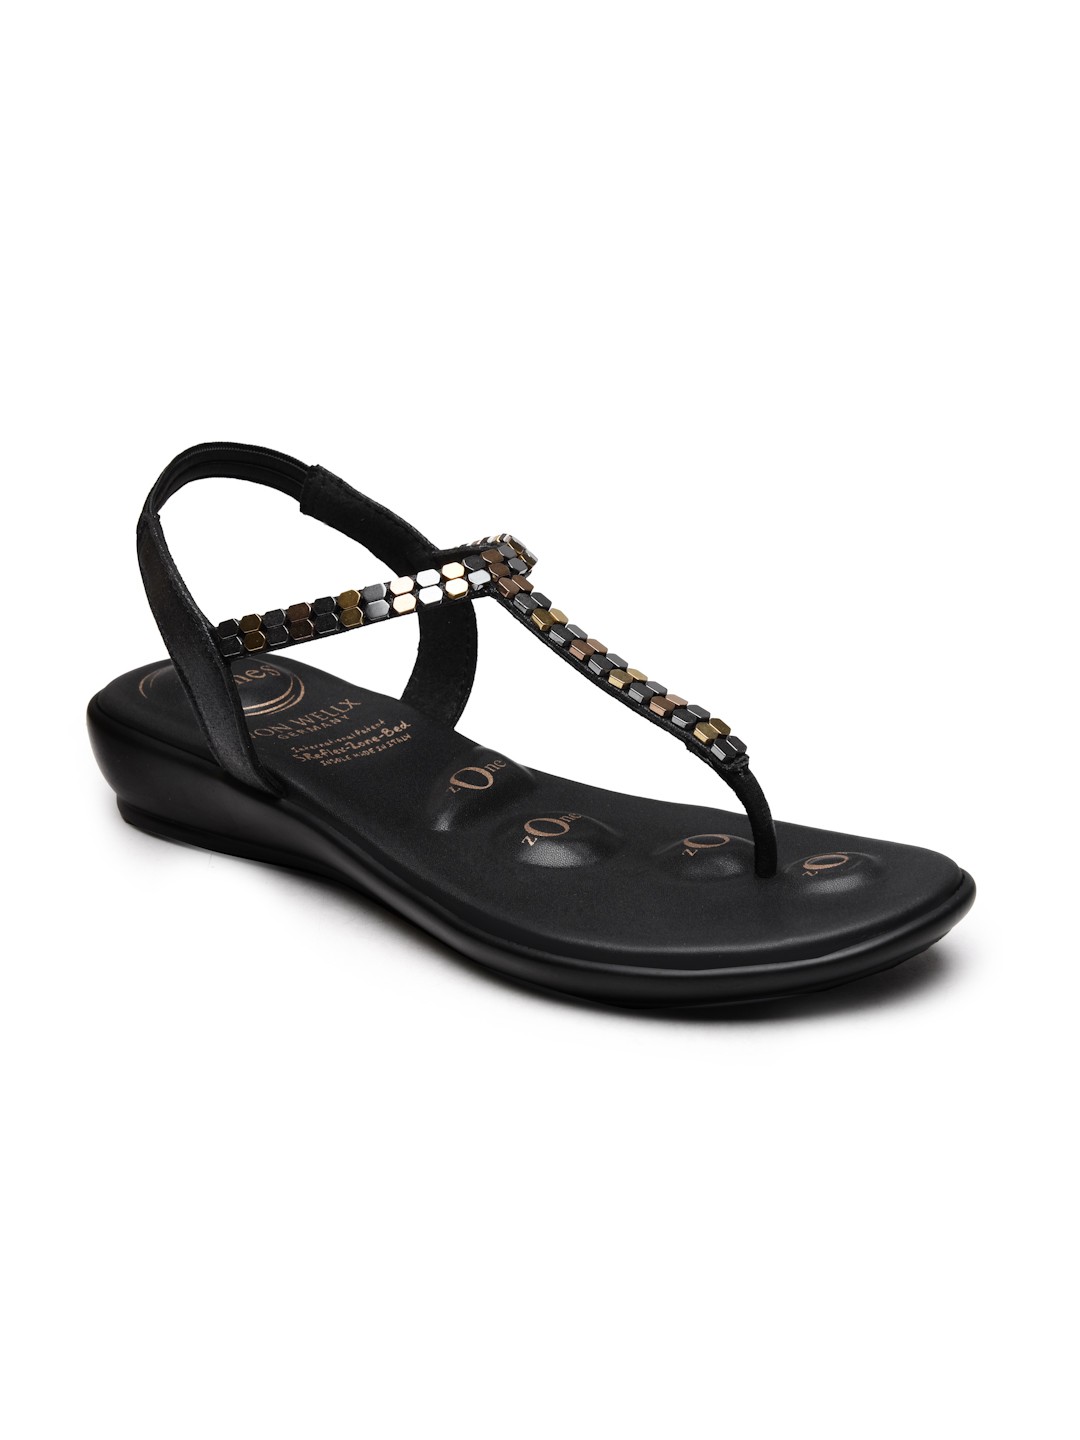 Buy Von Wellx Germany Comfort Women's Black Casual Sandals Regina Online in Coimbatore